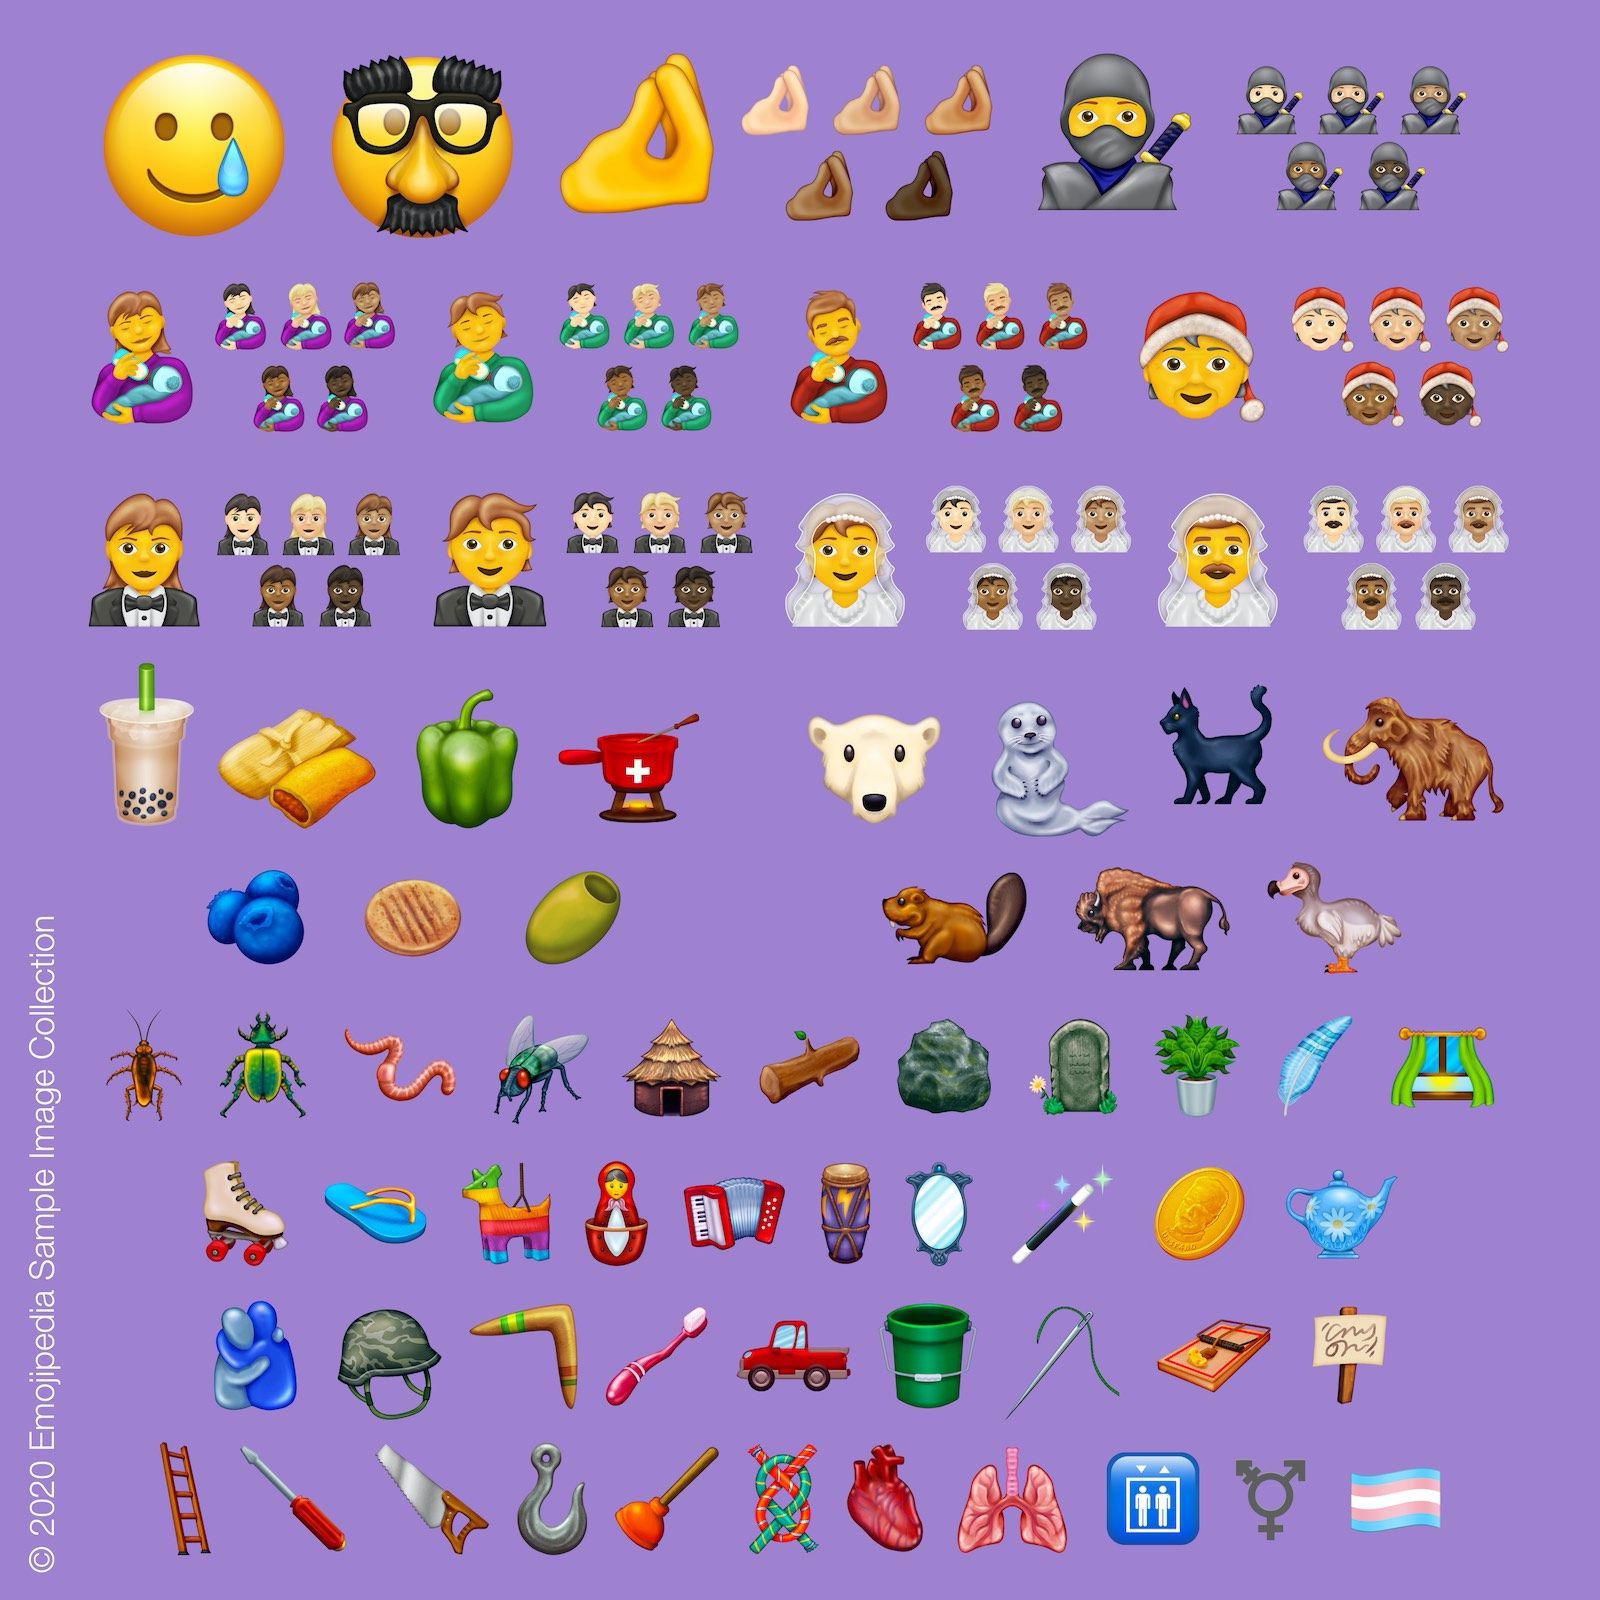 Nuove Emoji 2020; in arrivo orso polare, piuma, bacchetta magica e tantissime altre